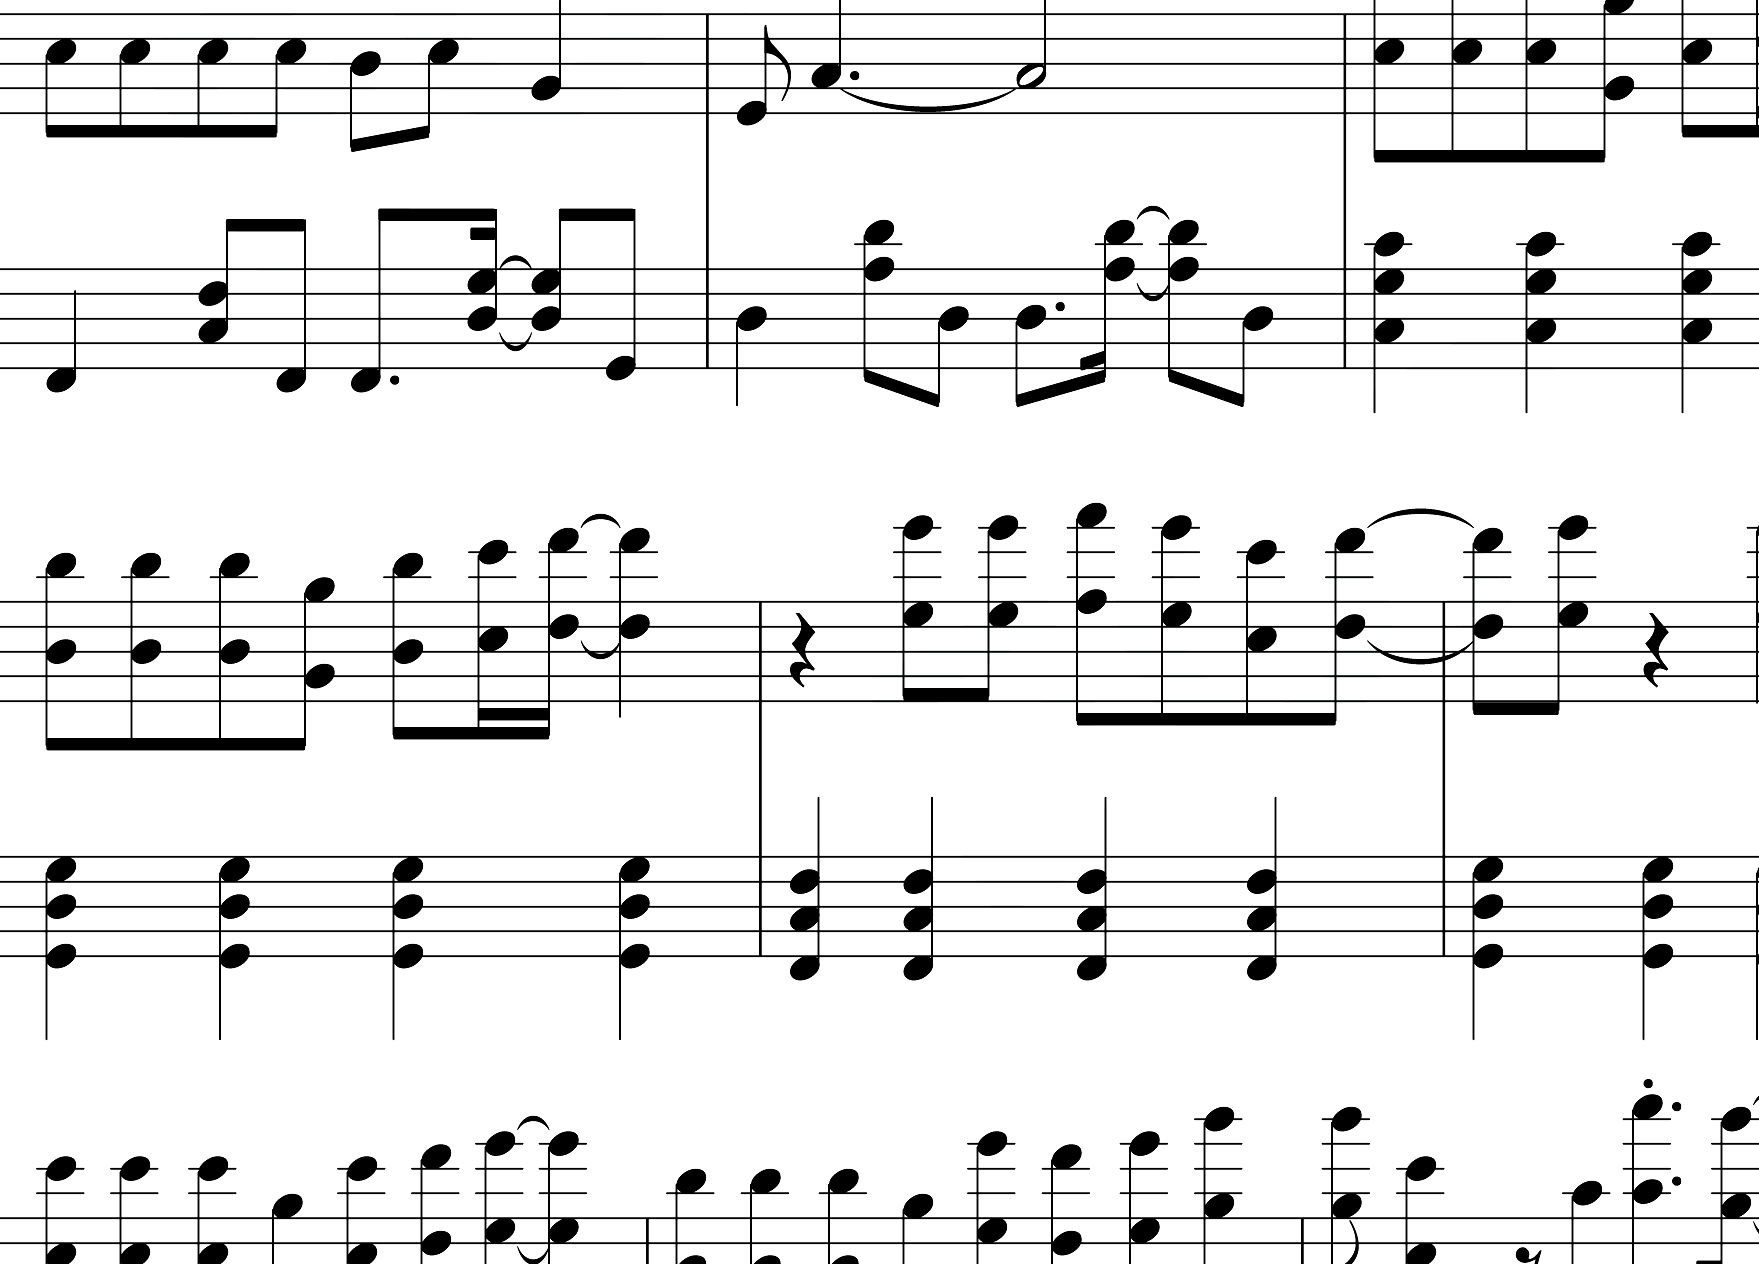 钢琴谱唯一-王力宏-王力宏最具流行度的作品之一!